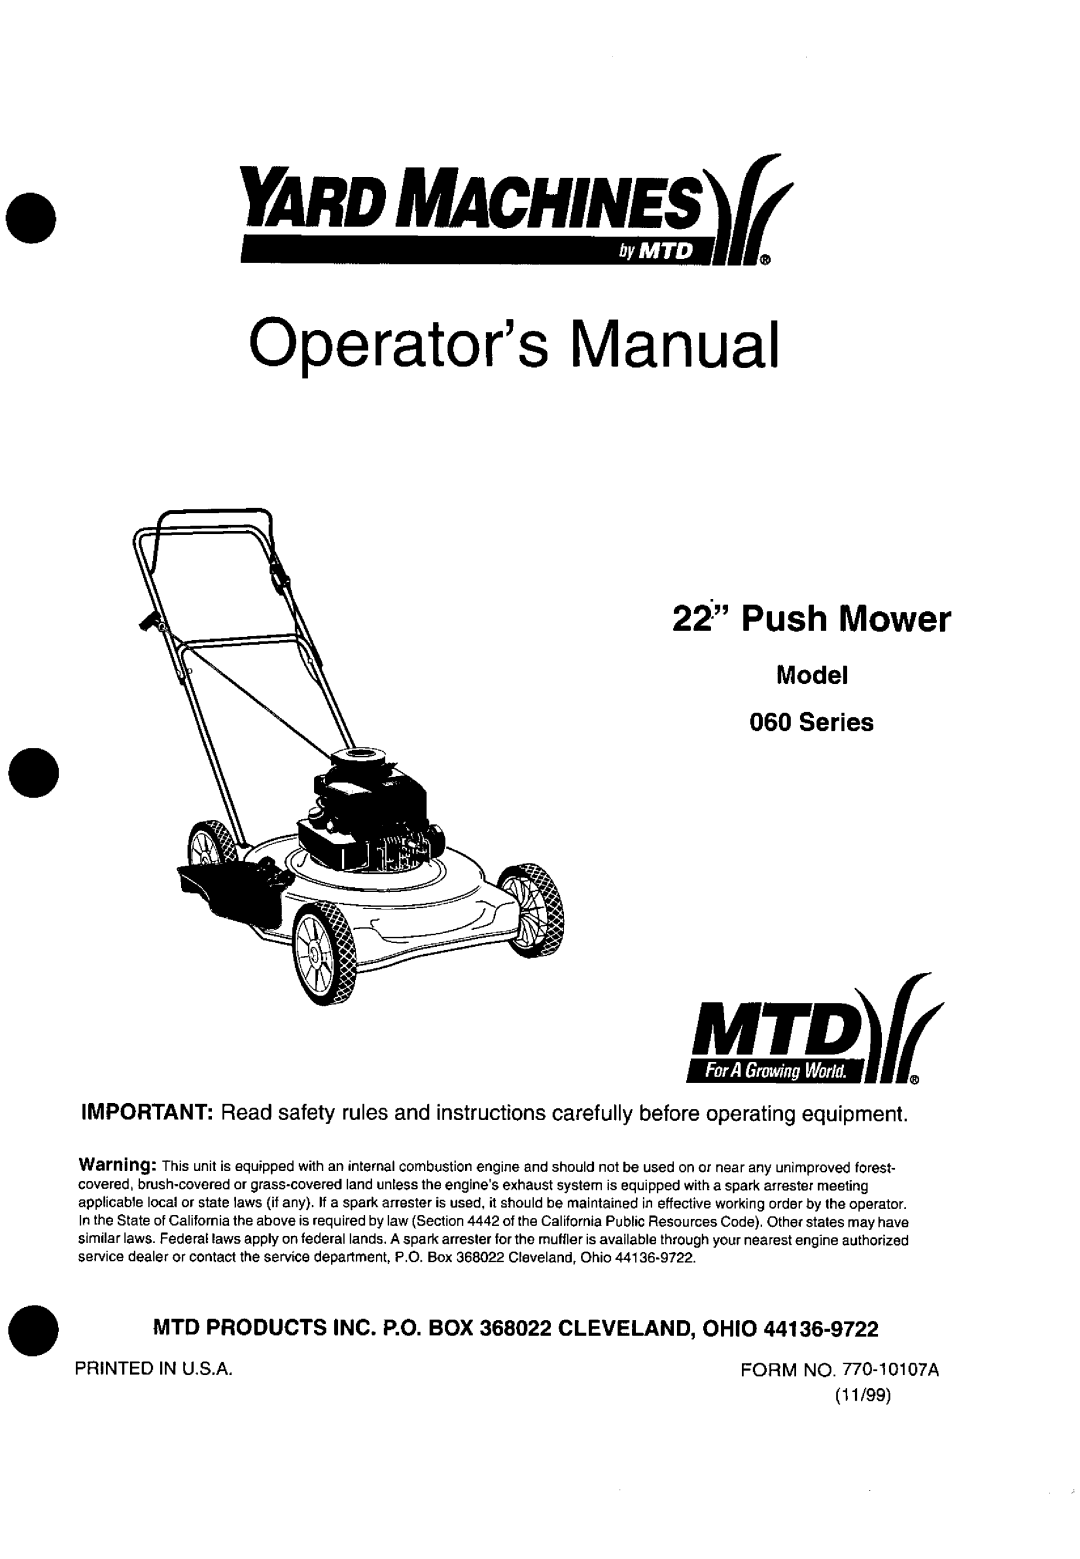 Yard Machines 060 Series manual 